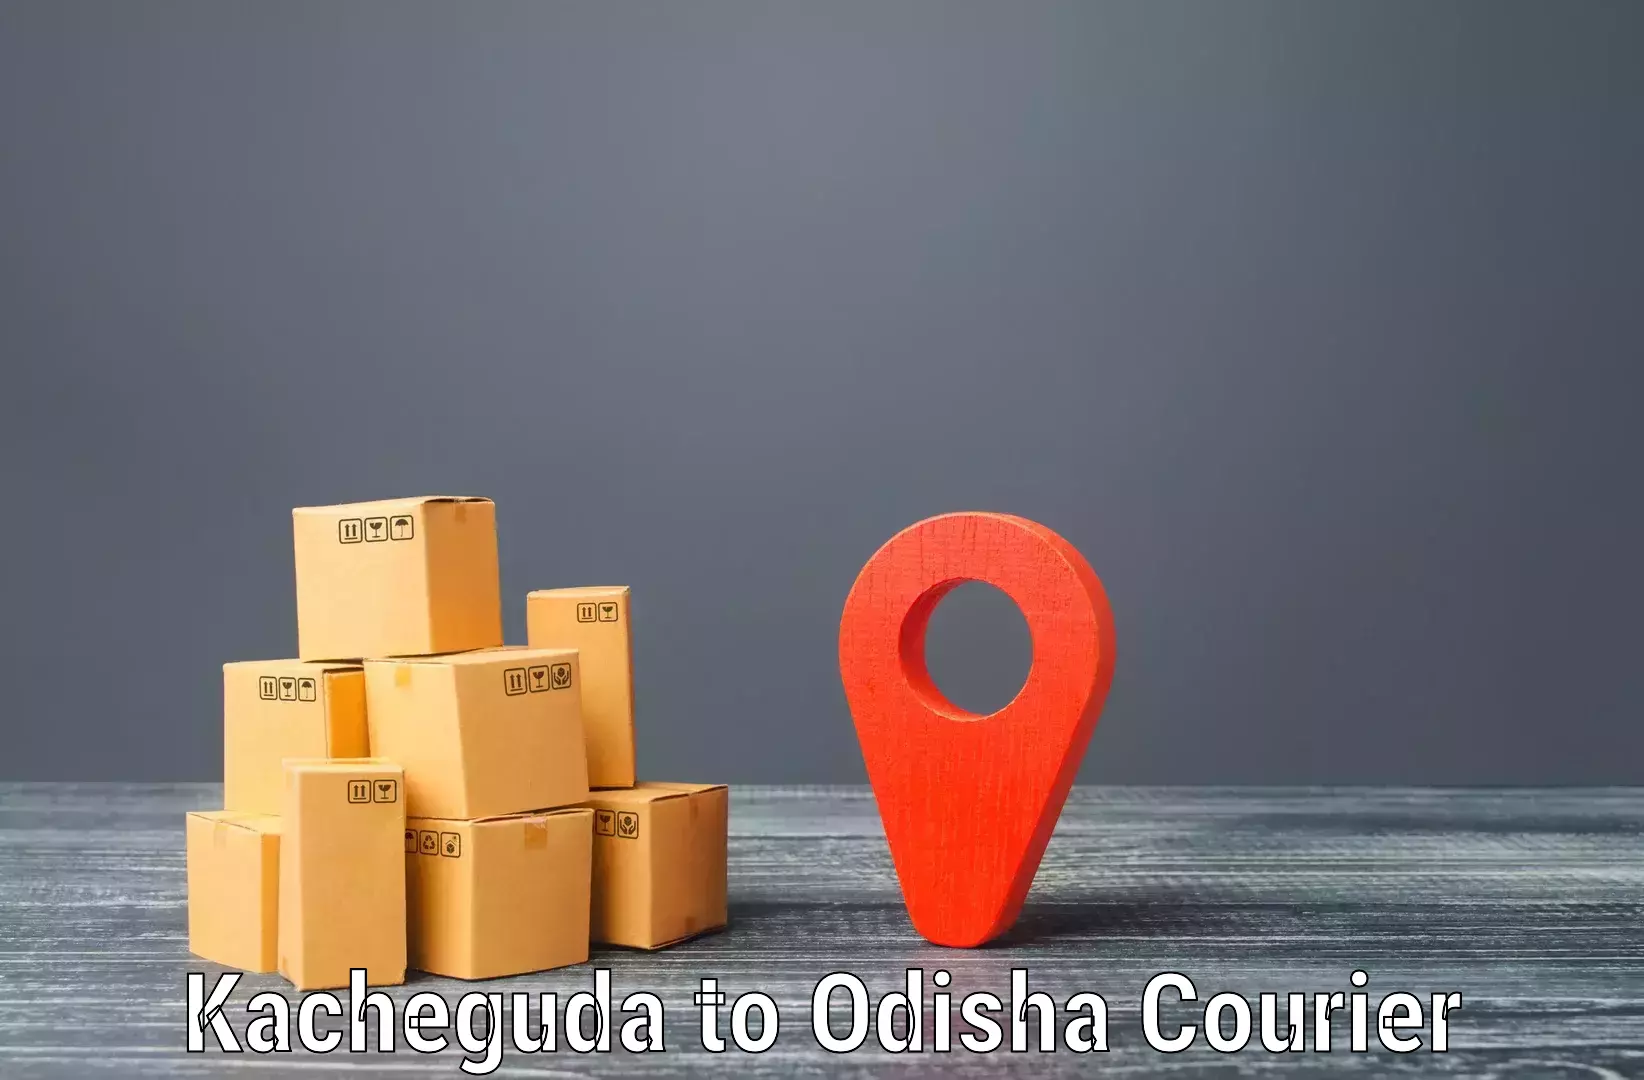 Courier service comparison Kacheguda to Morada